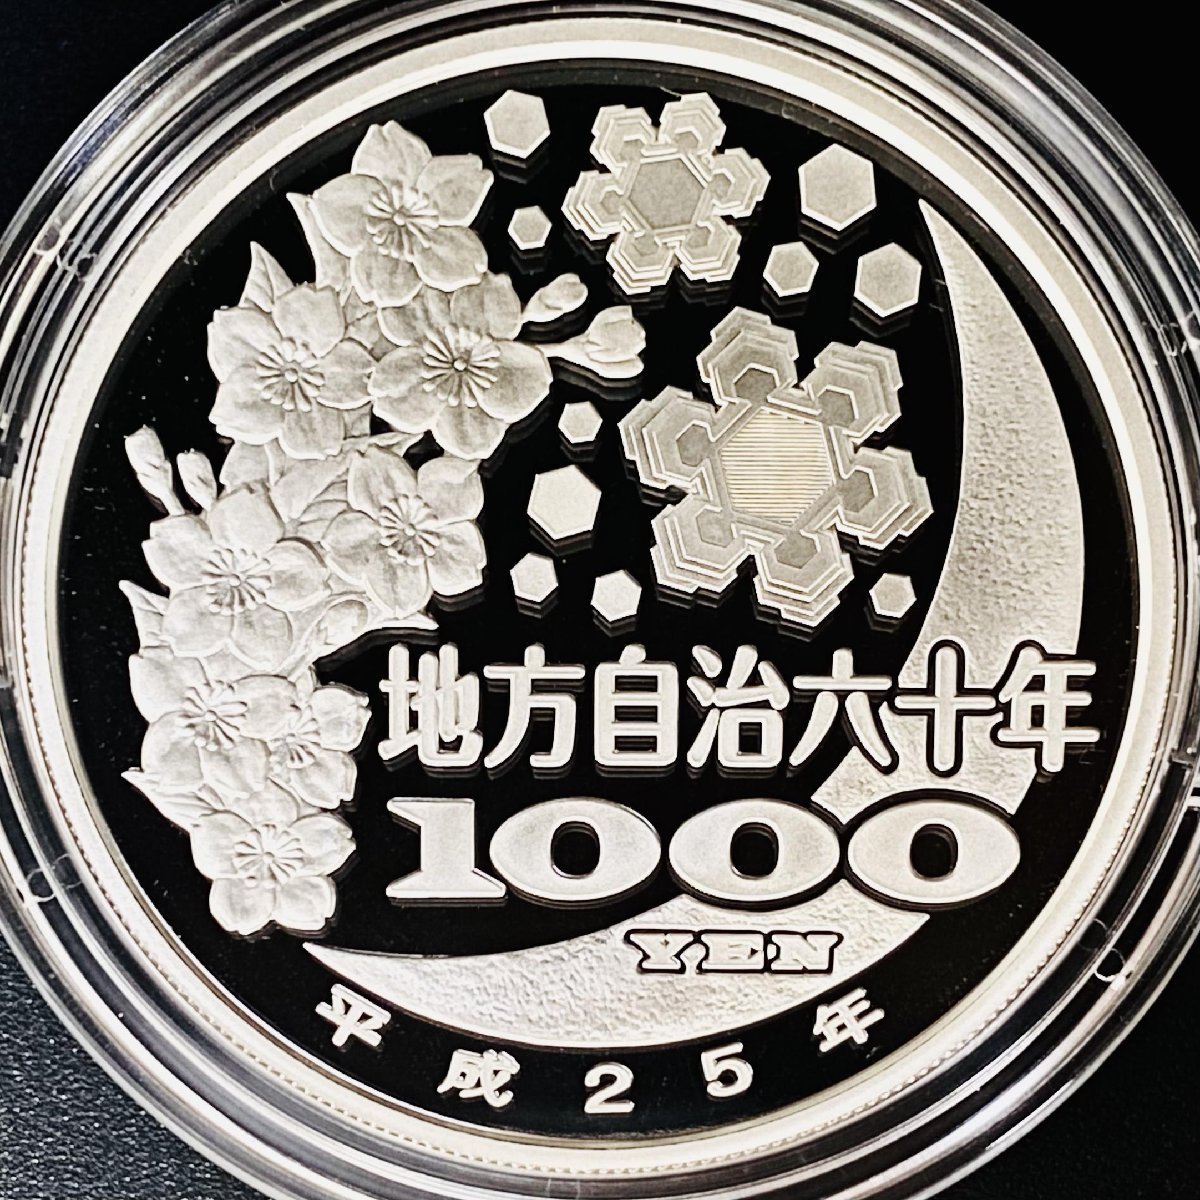 日本未入荷 地方自治法施行60周年記念貨幣 千円銀貨幣プルーフ貨幣